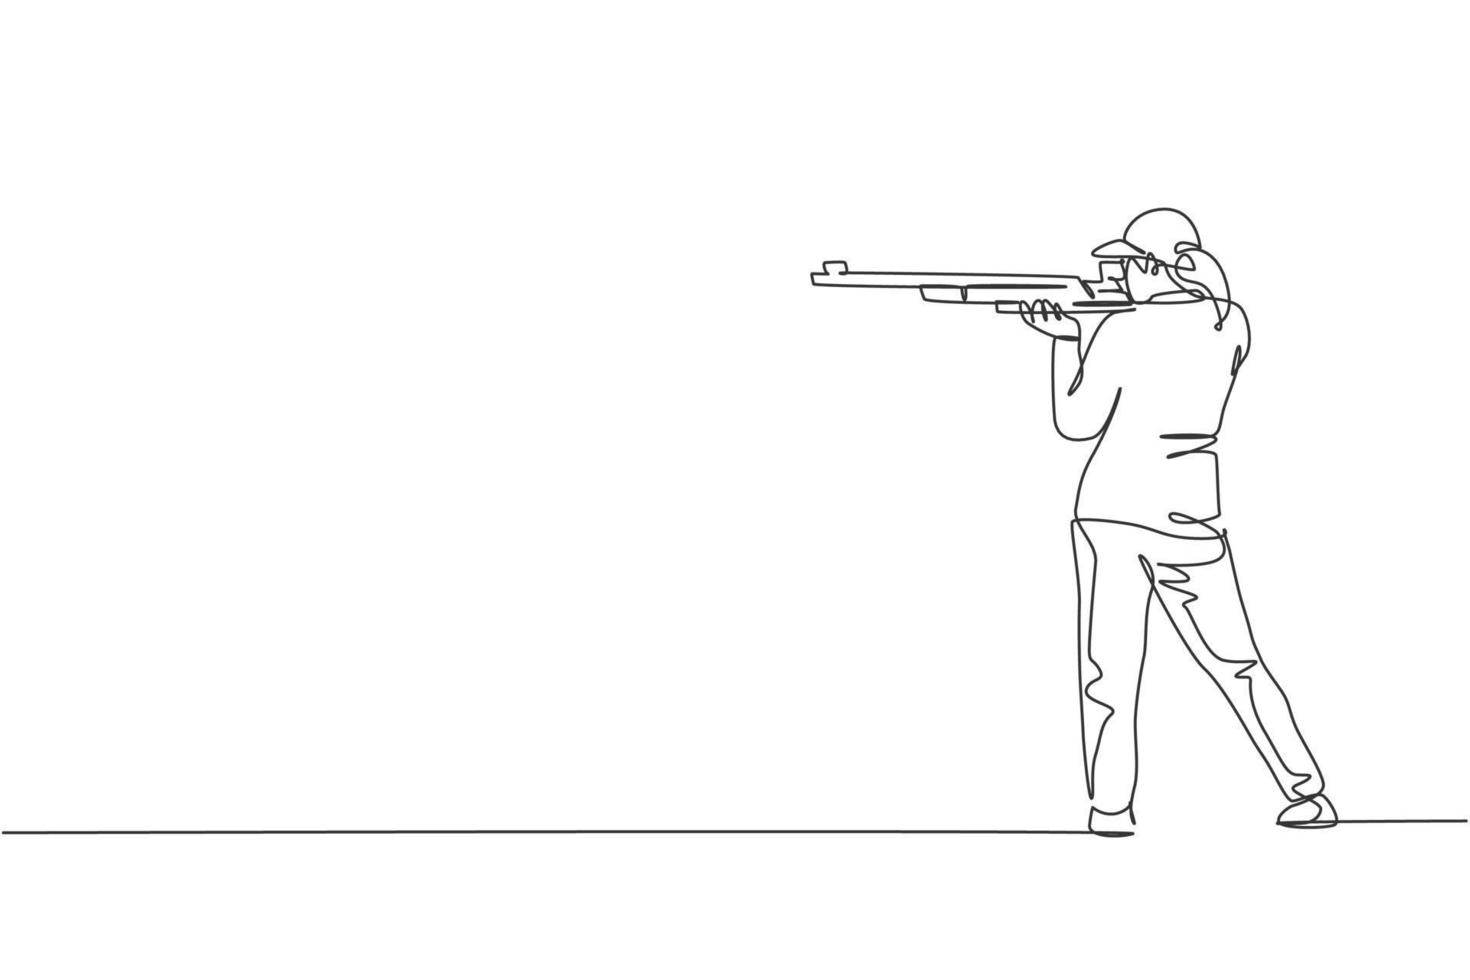 una sola línea dibujando a una mujer joven practicando para disparar al objetivo en el rango de tiro en la ilustración gráfica vectorial del campo de entrenamiento. concepto deportivo de tiro al plato. diseño moderno de dibujo de línea continua vector